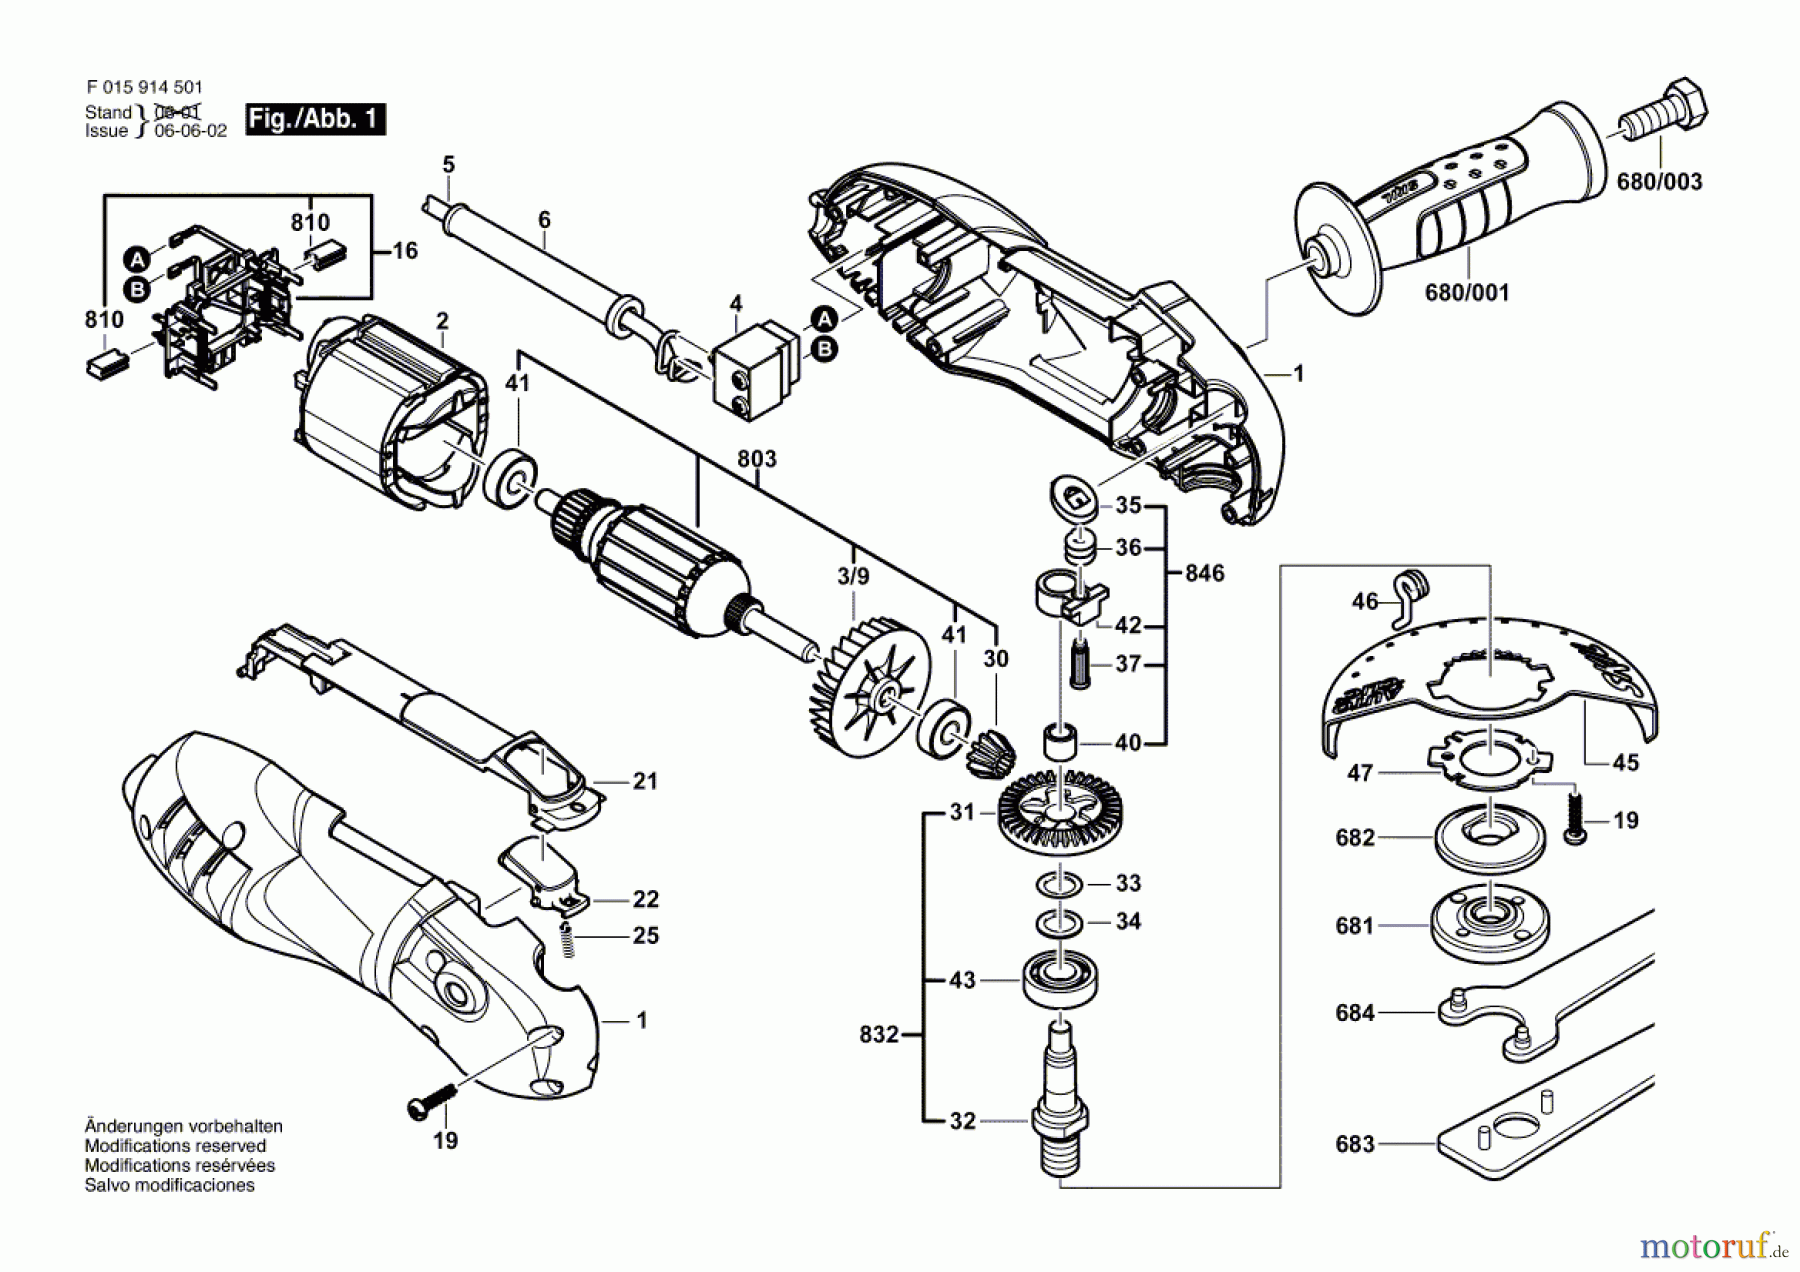  Bosch Werkzeug Winkelschleifer 9145 Seite 1